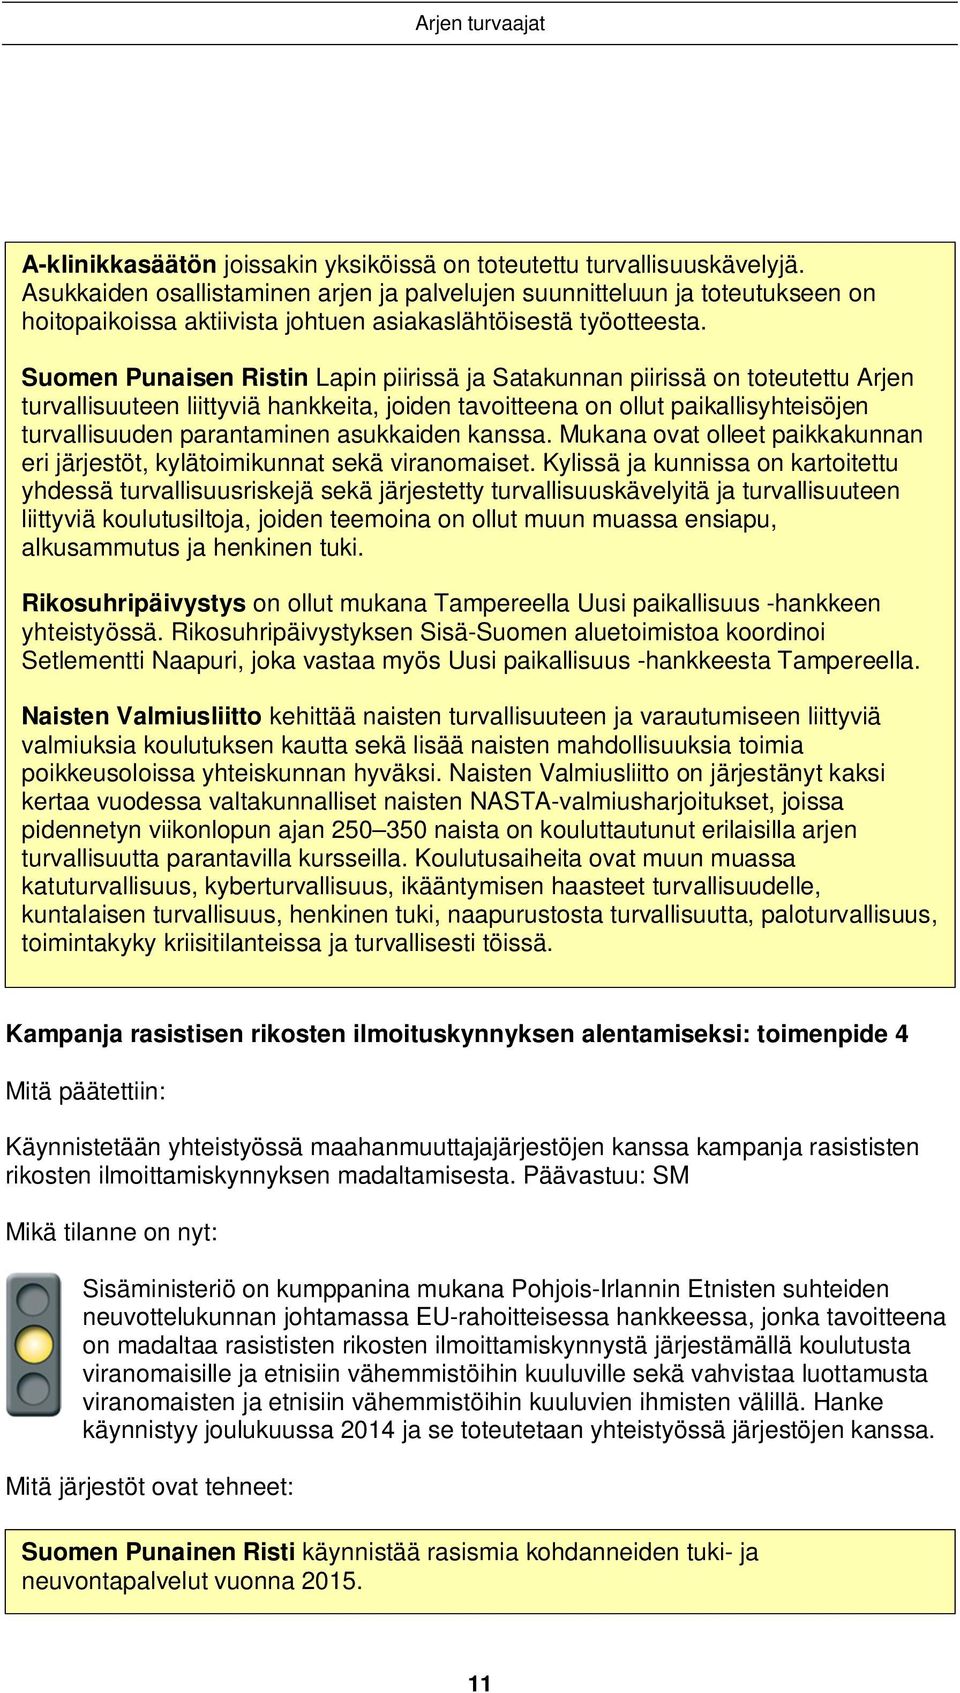 Suomen Punaisen Ristin Lapin piirissä ja Satakunnan piirissä on toteutettu Arjen turvallisuuteen liittyviä hankkeita, joiden tavoitteena on ollut paikallisyhteisöjen turvallisuuden parantaminen